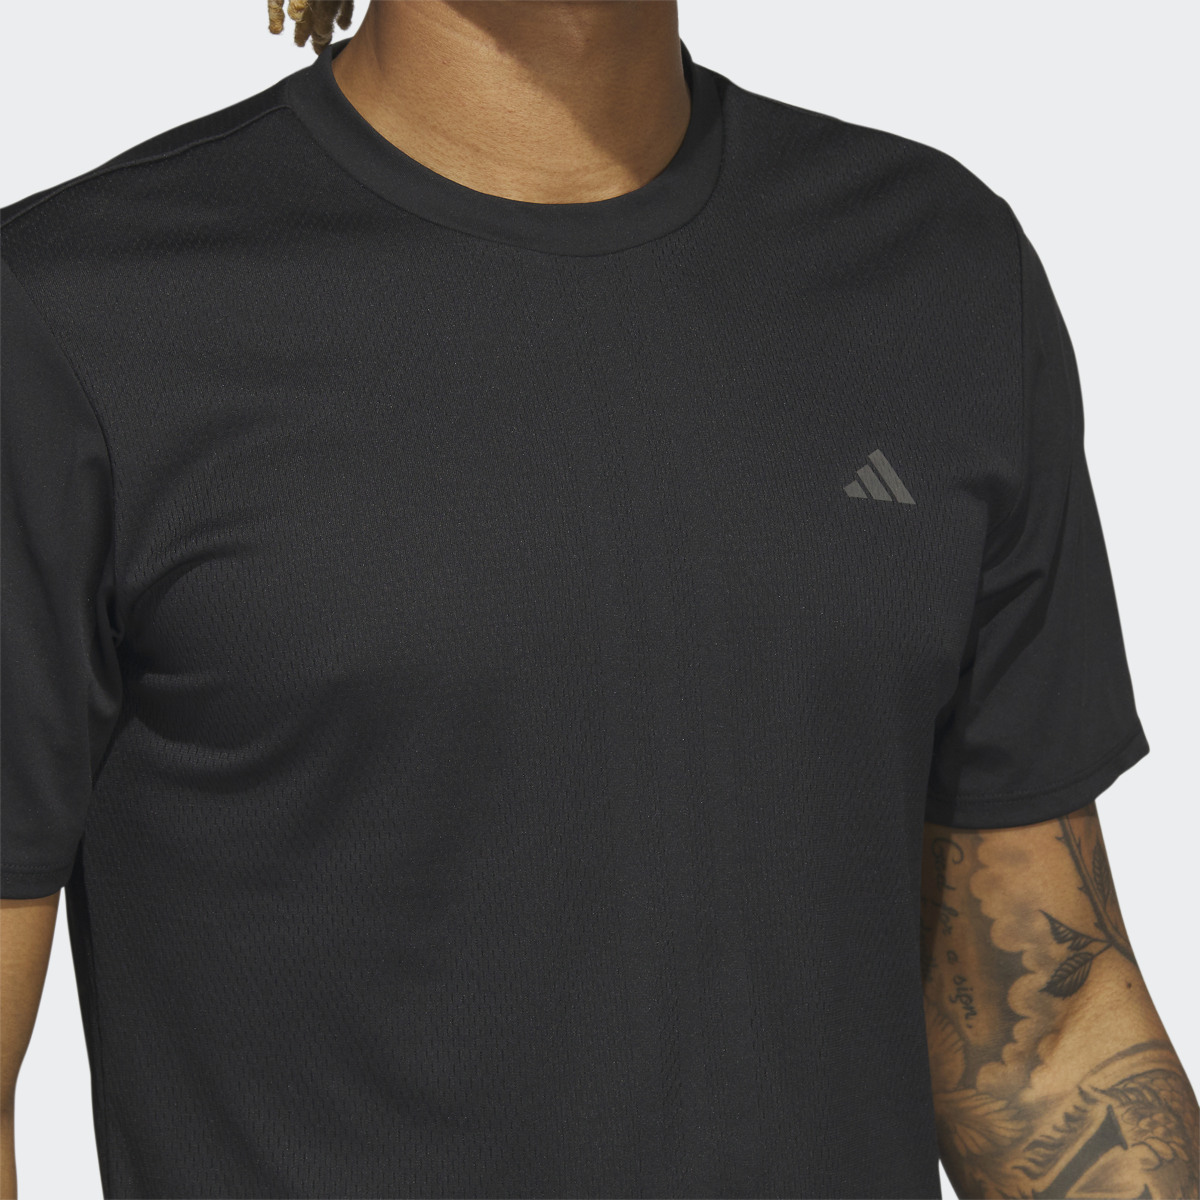 Adidas Camiseta HIIT Engineered Training. 6